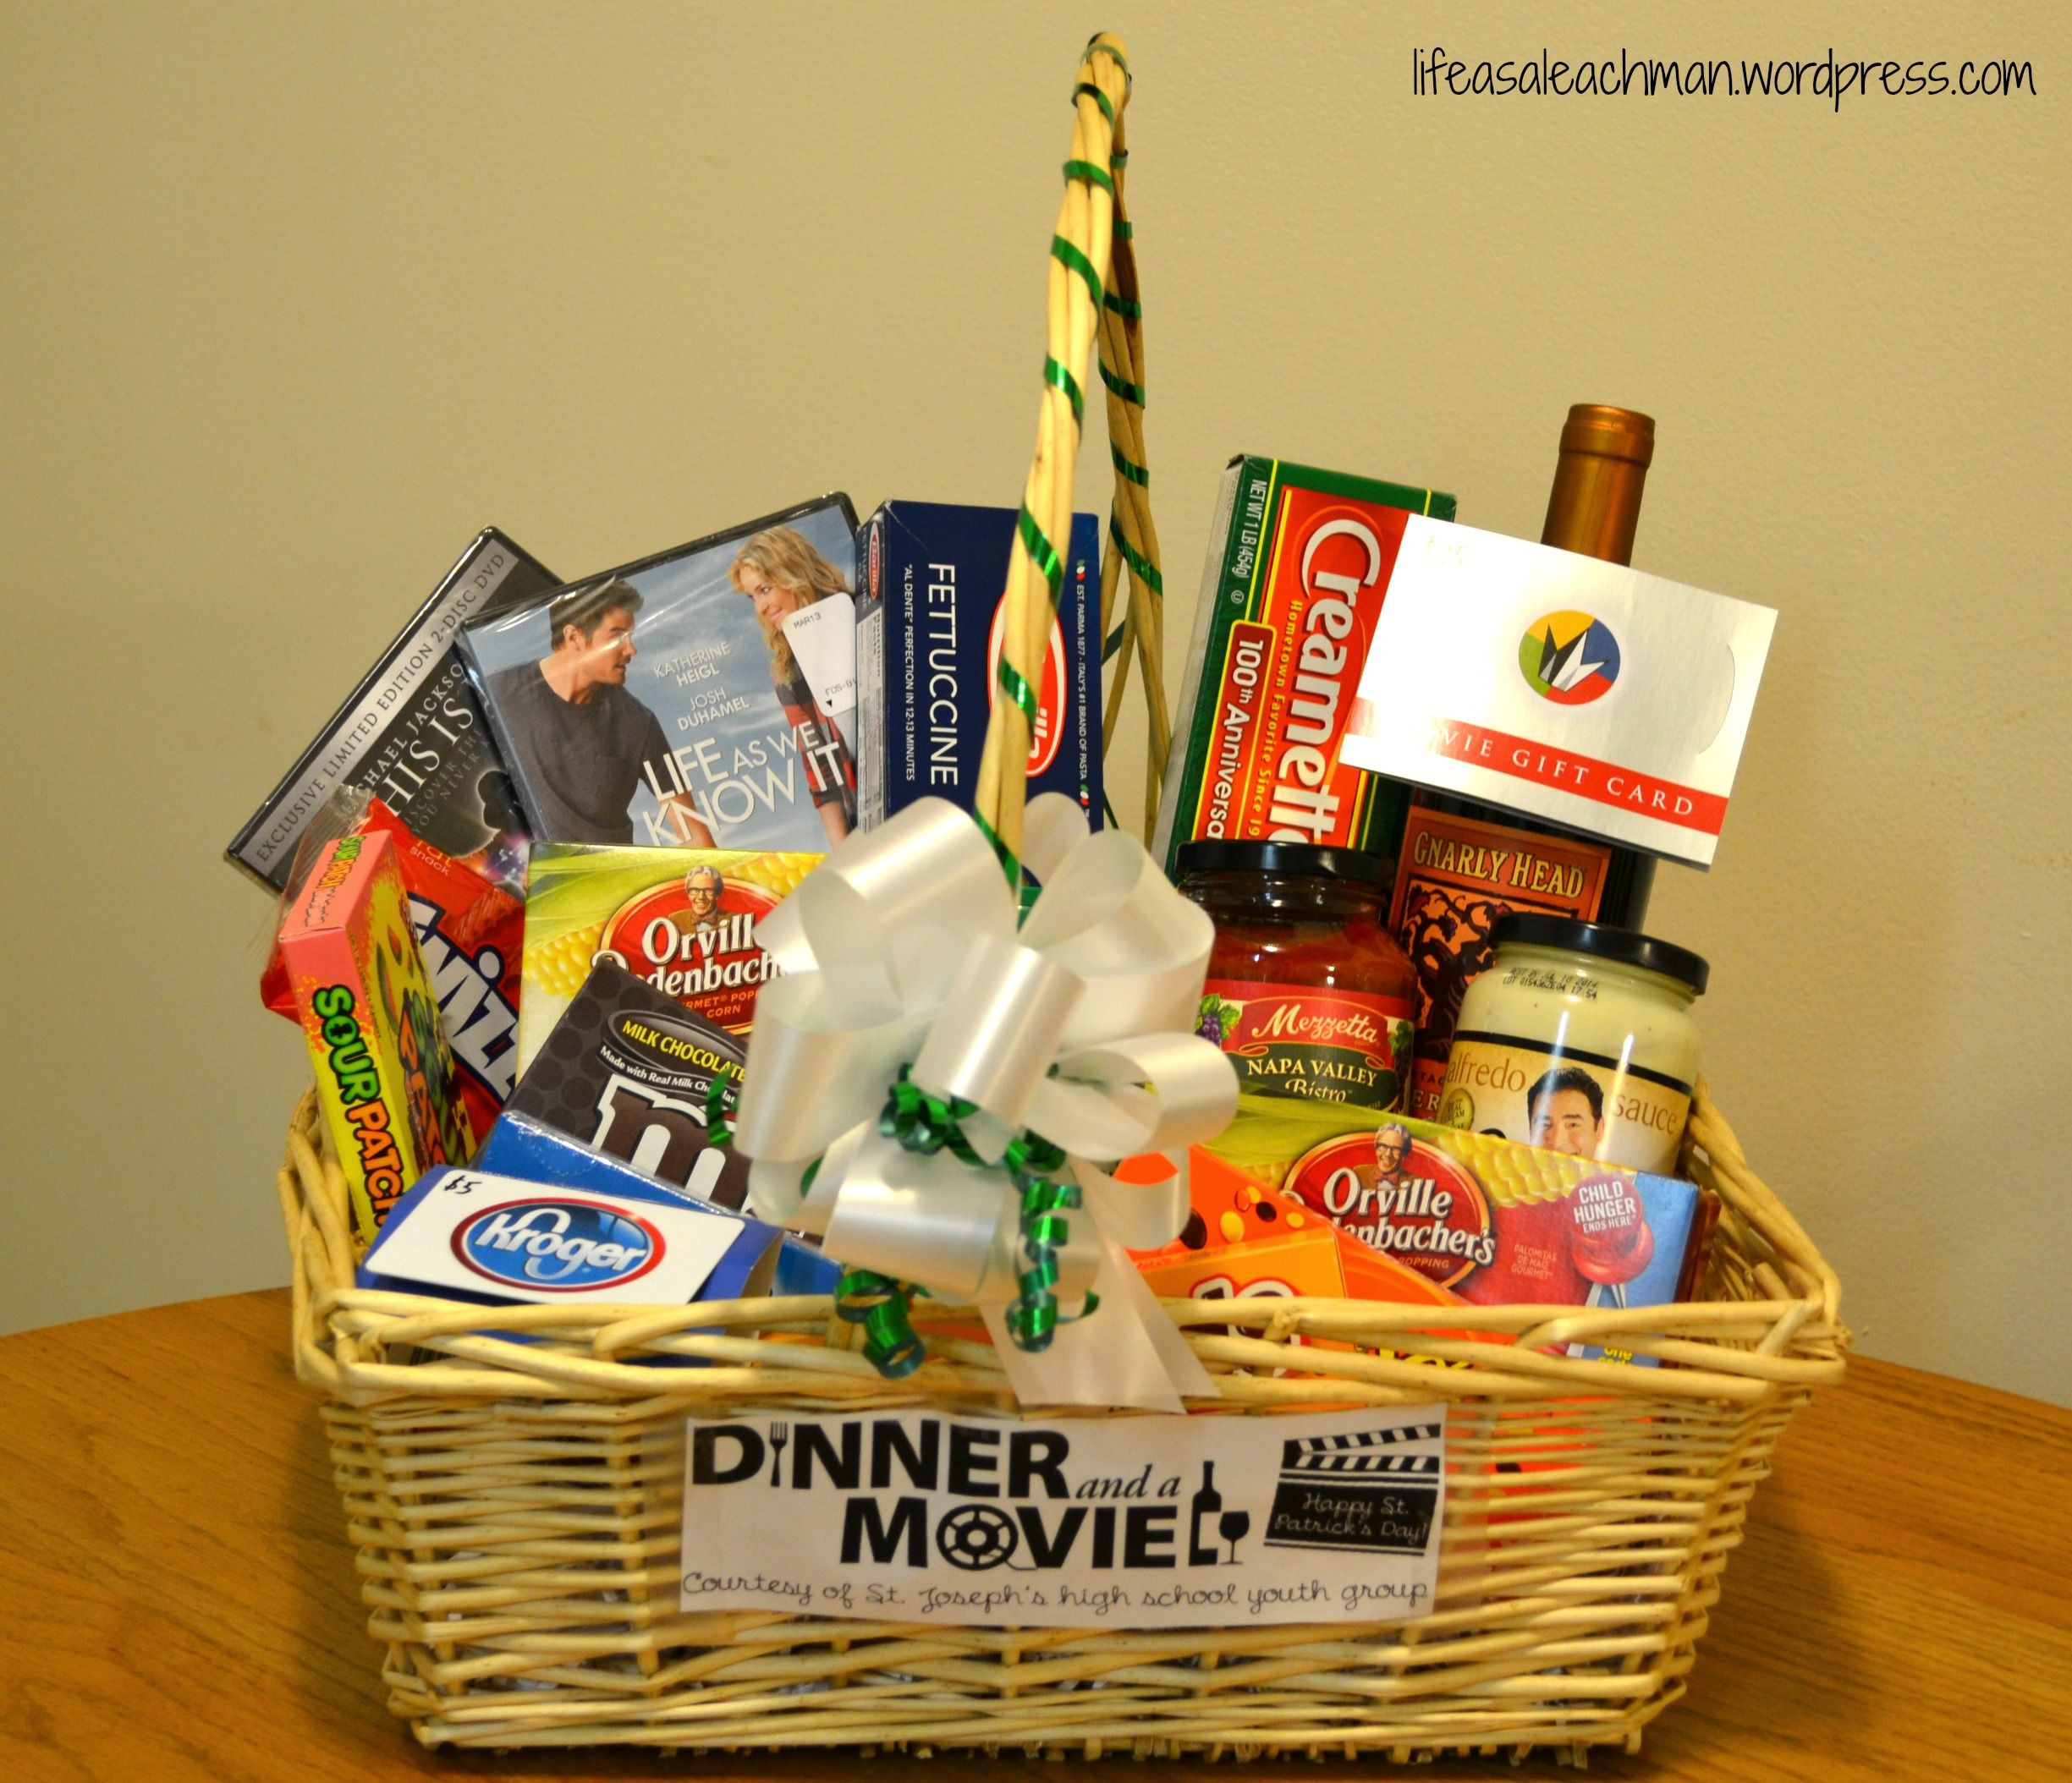 Movie Date Night Gift Basket Ideas
 ‘Dinner & a Movie’ t basket